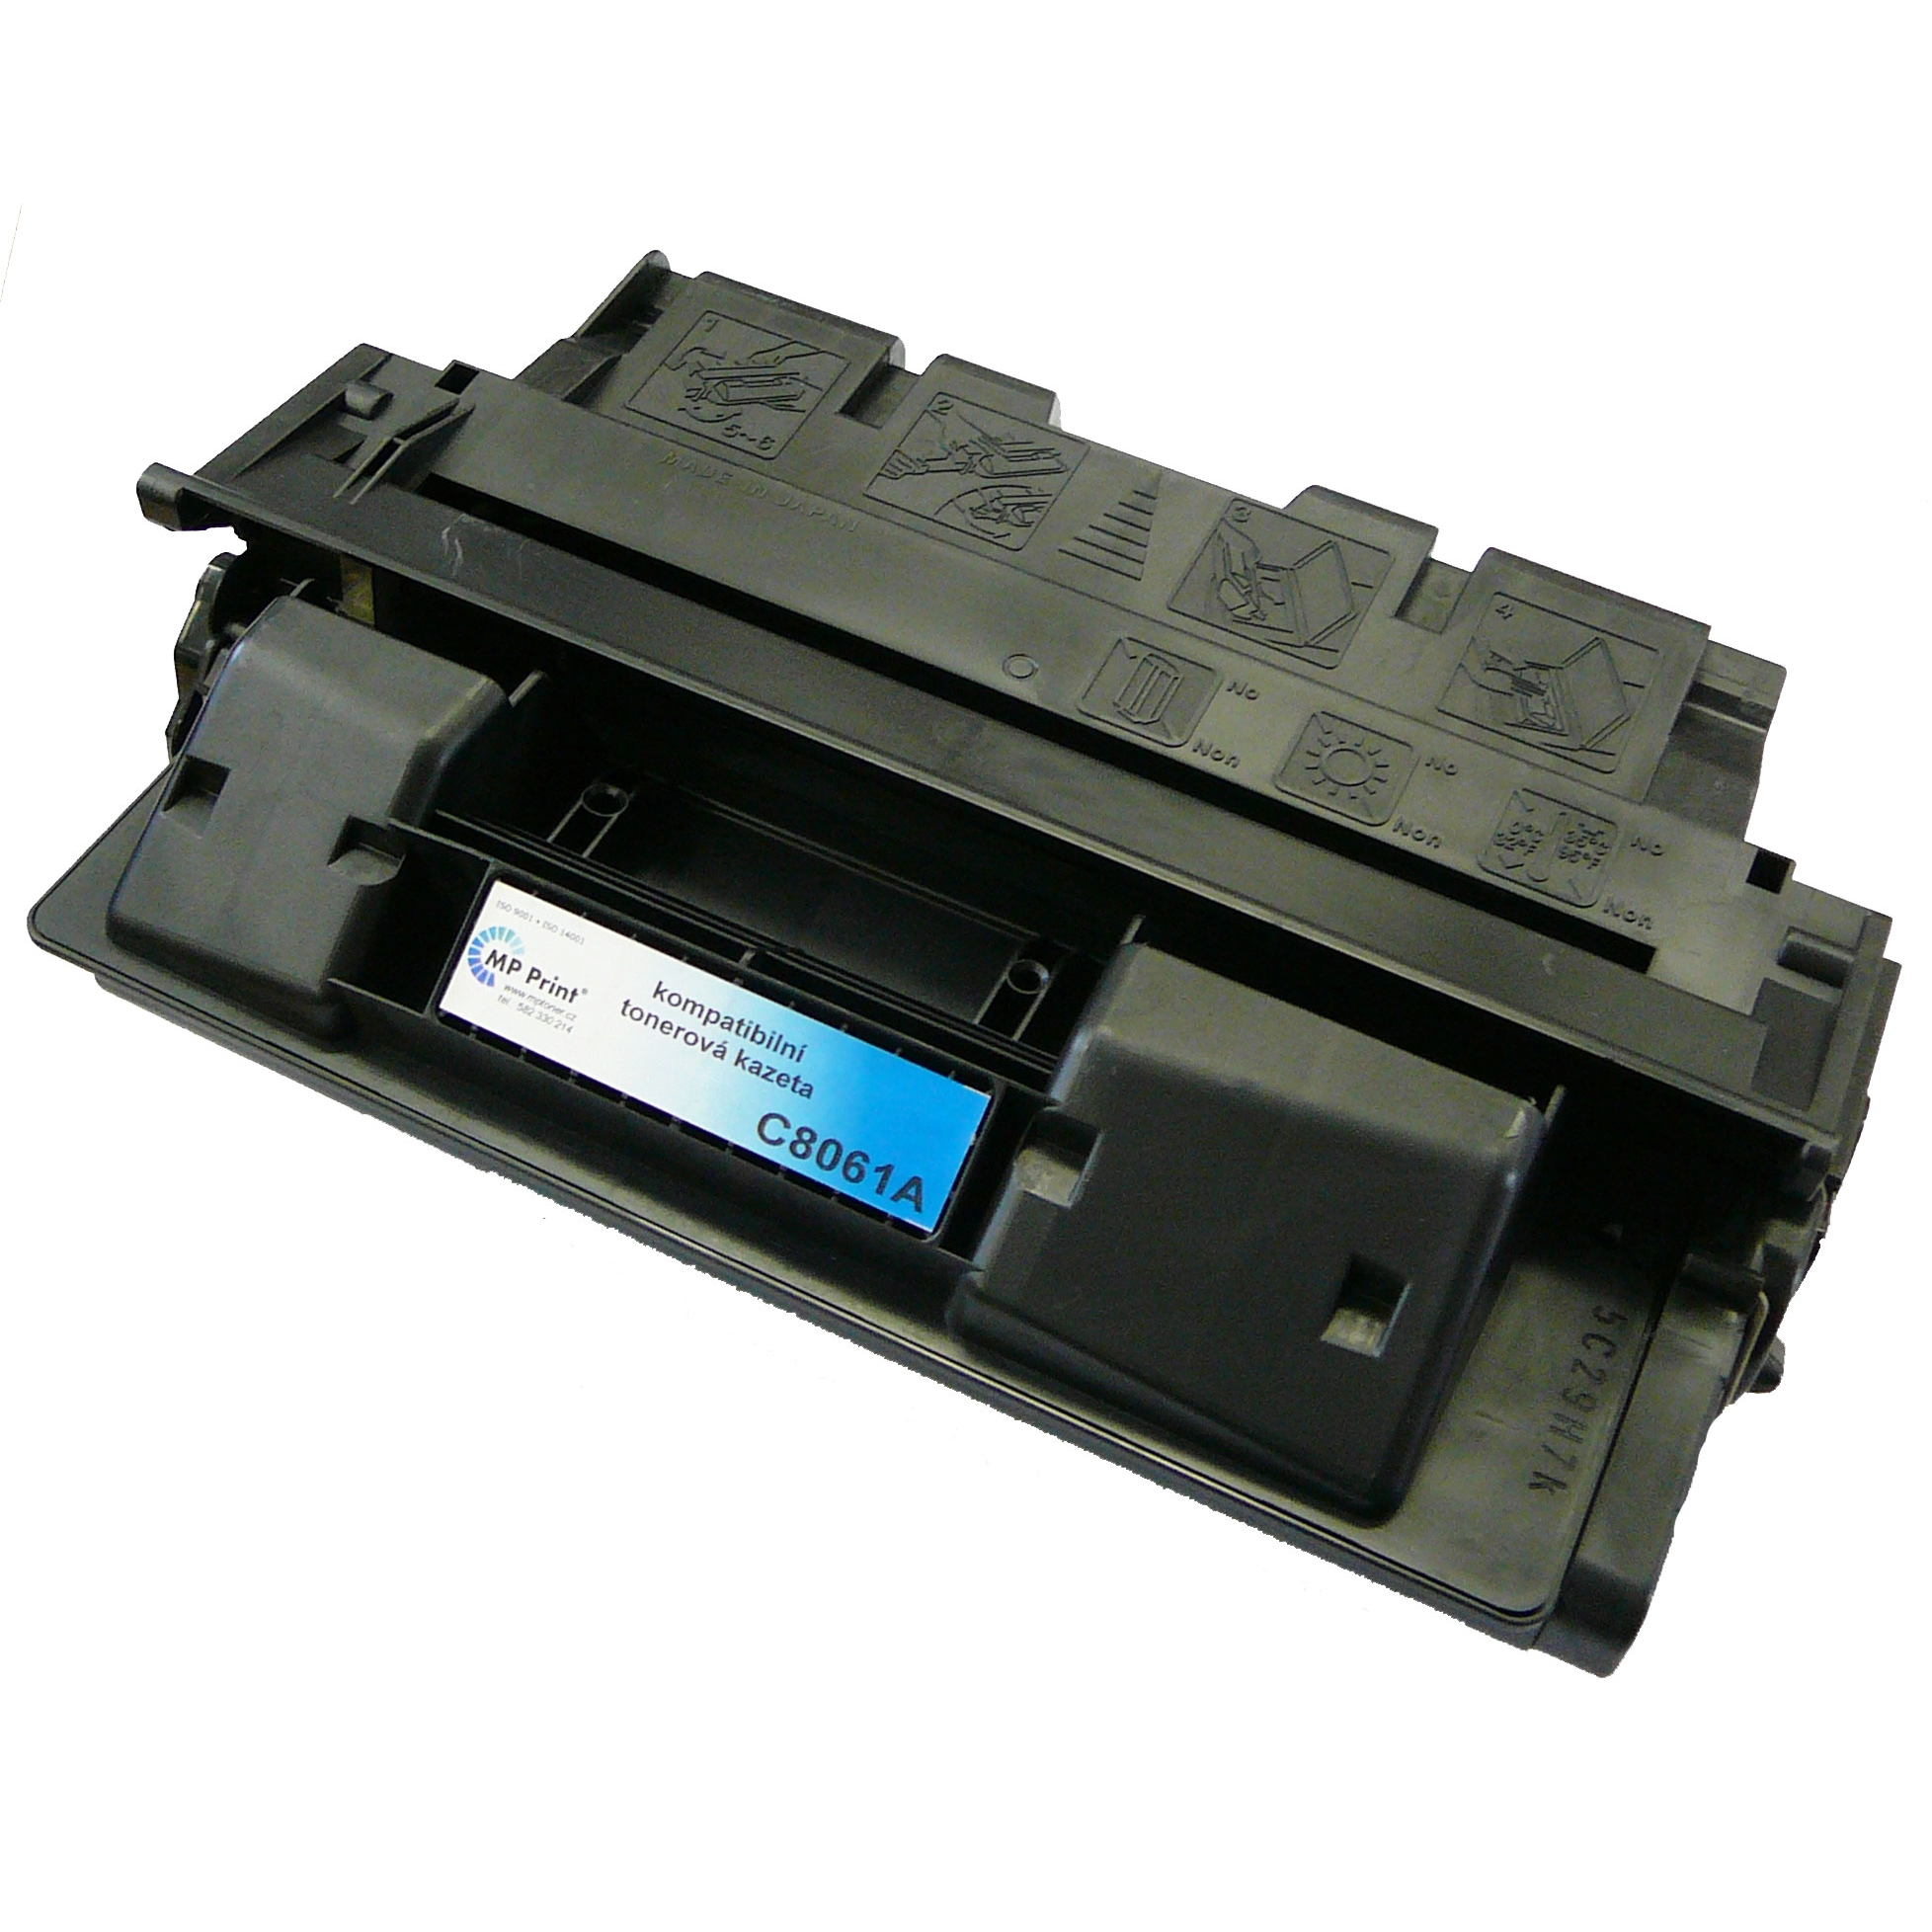 Kompatibilní toner HP C8061A, LaserJet 4100, black, MP print